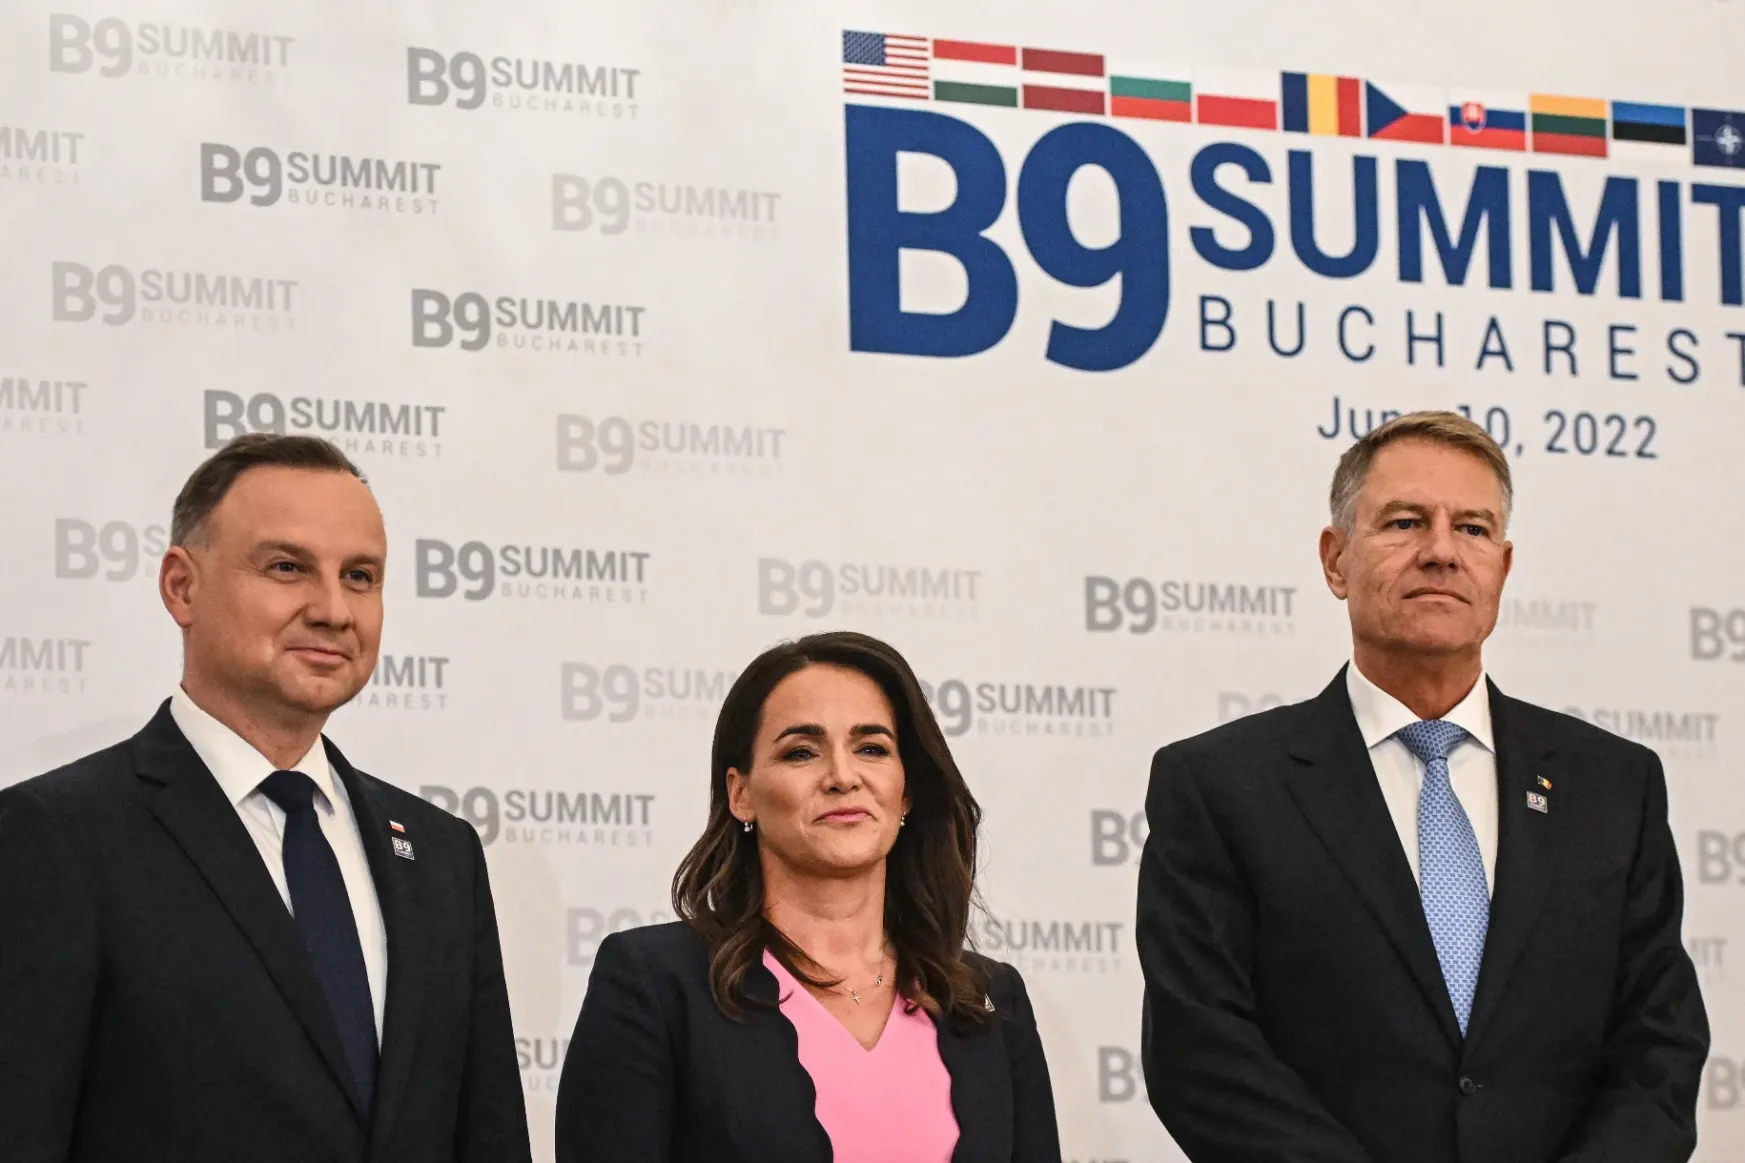 Iohannis és Novák Katalin is találkozik Bidennel a Bukaresti Kilencek varsói megbeszélésén